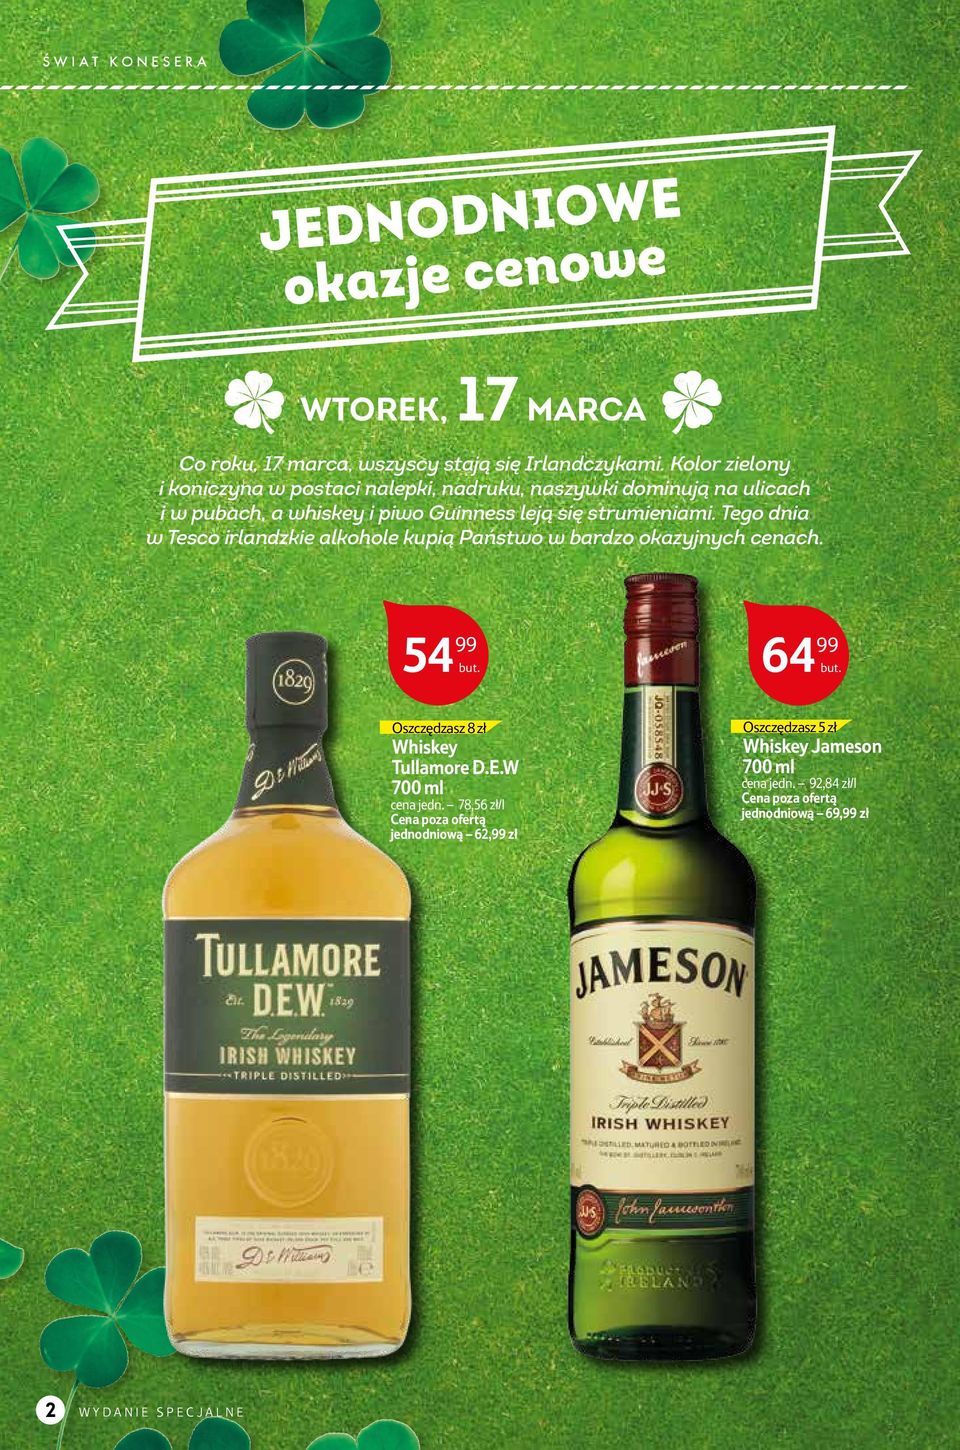 strumieniami. Tego dnia w Tesco irlandzkie alkohole kupią Państwo w bardzo okazyjnych cenach.